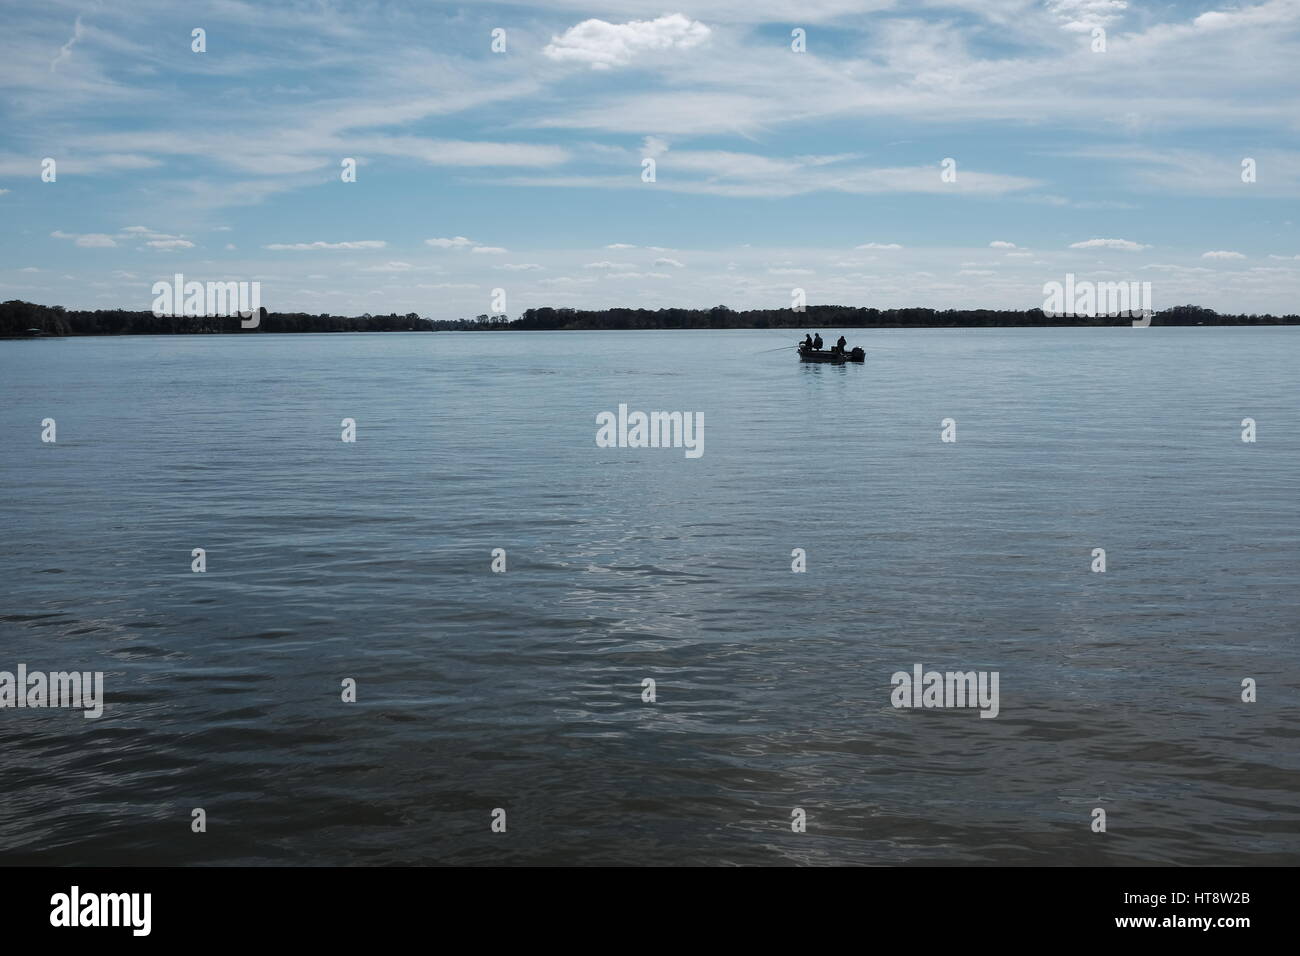 Sur une superbe journée, trois amis de prendre congé pour s'amuser, se détendre, et faire du bateau et de la pêche sur les eaux placides du lac Dora en Floride centrale. Banque D'Images